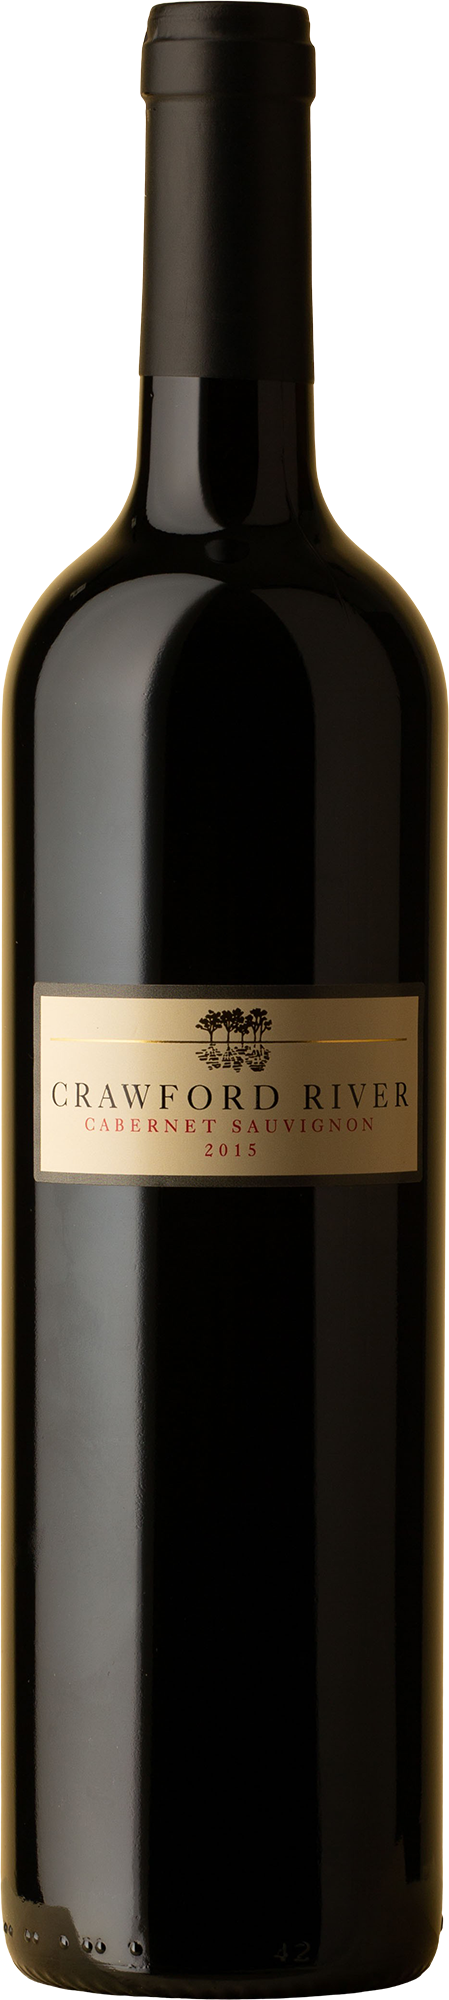 Crawford River - Cabernet Sauvignon 2015 Red Wine